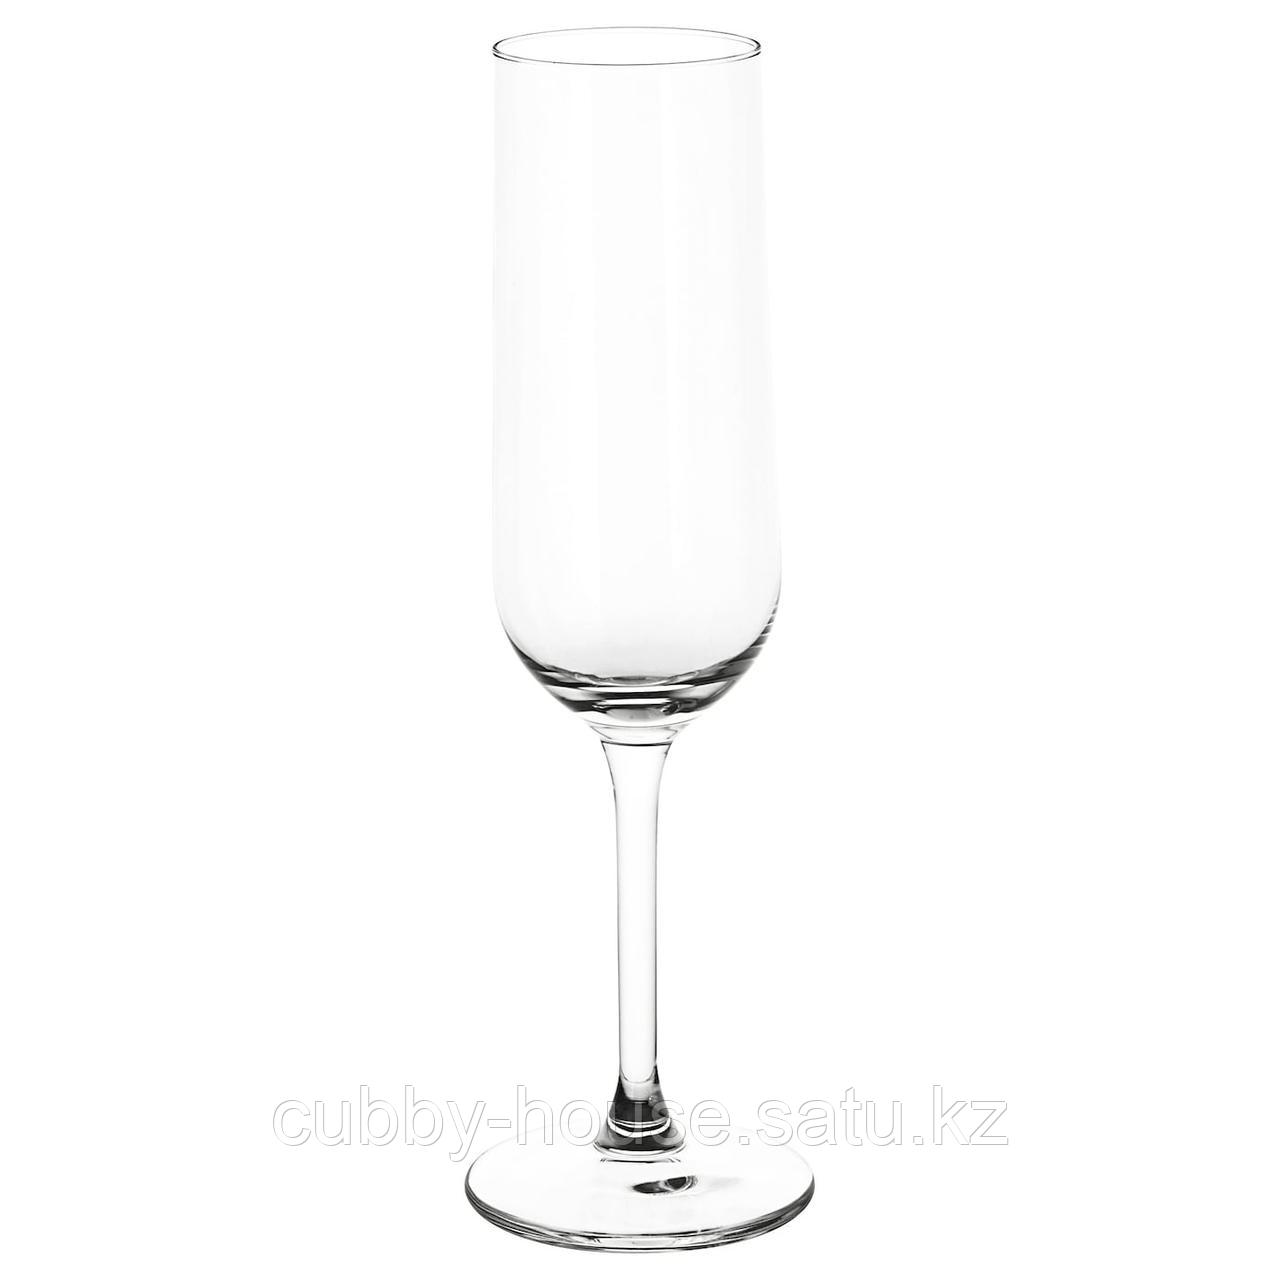 ХЕДЕРЛИГ Бокал для шампанского, прозрачное стекло, 22 сл